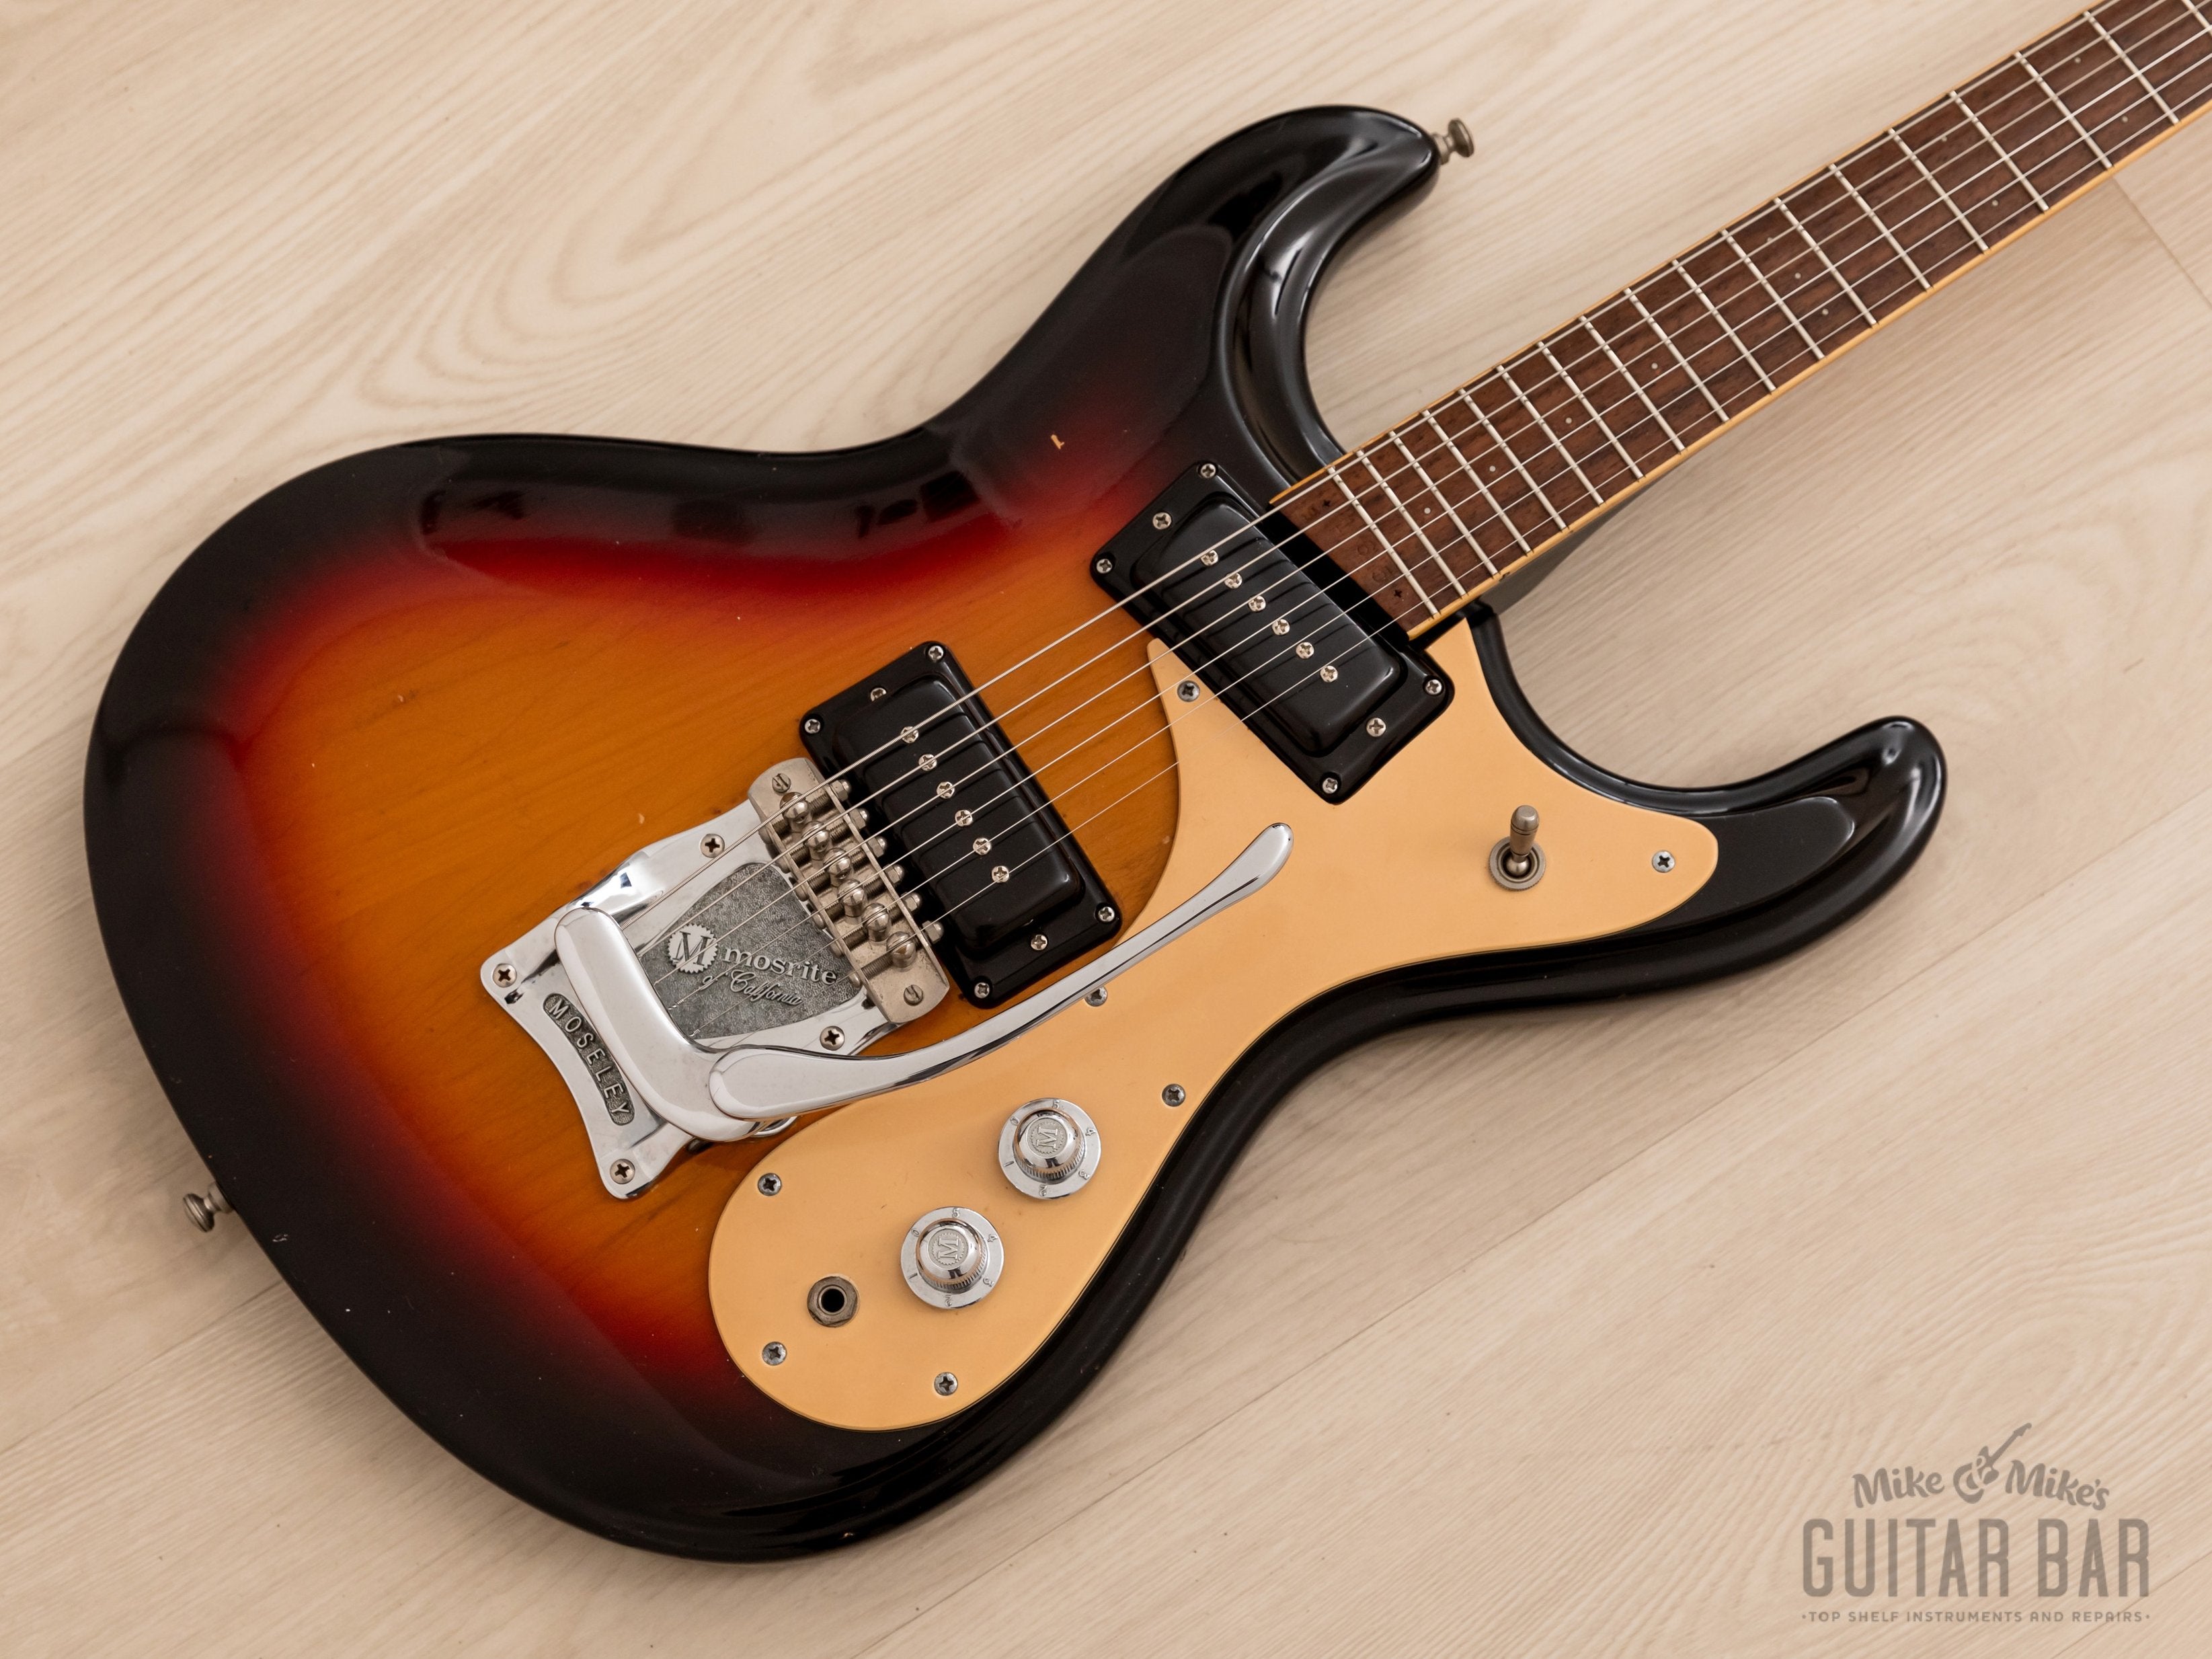 1978 Mosrite Ventures Model Vintage Guitar Sunburst w/ Moseley, Case